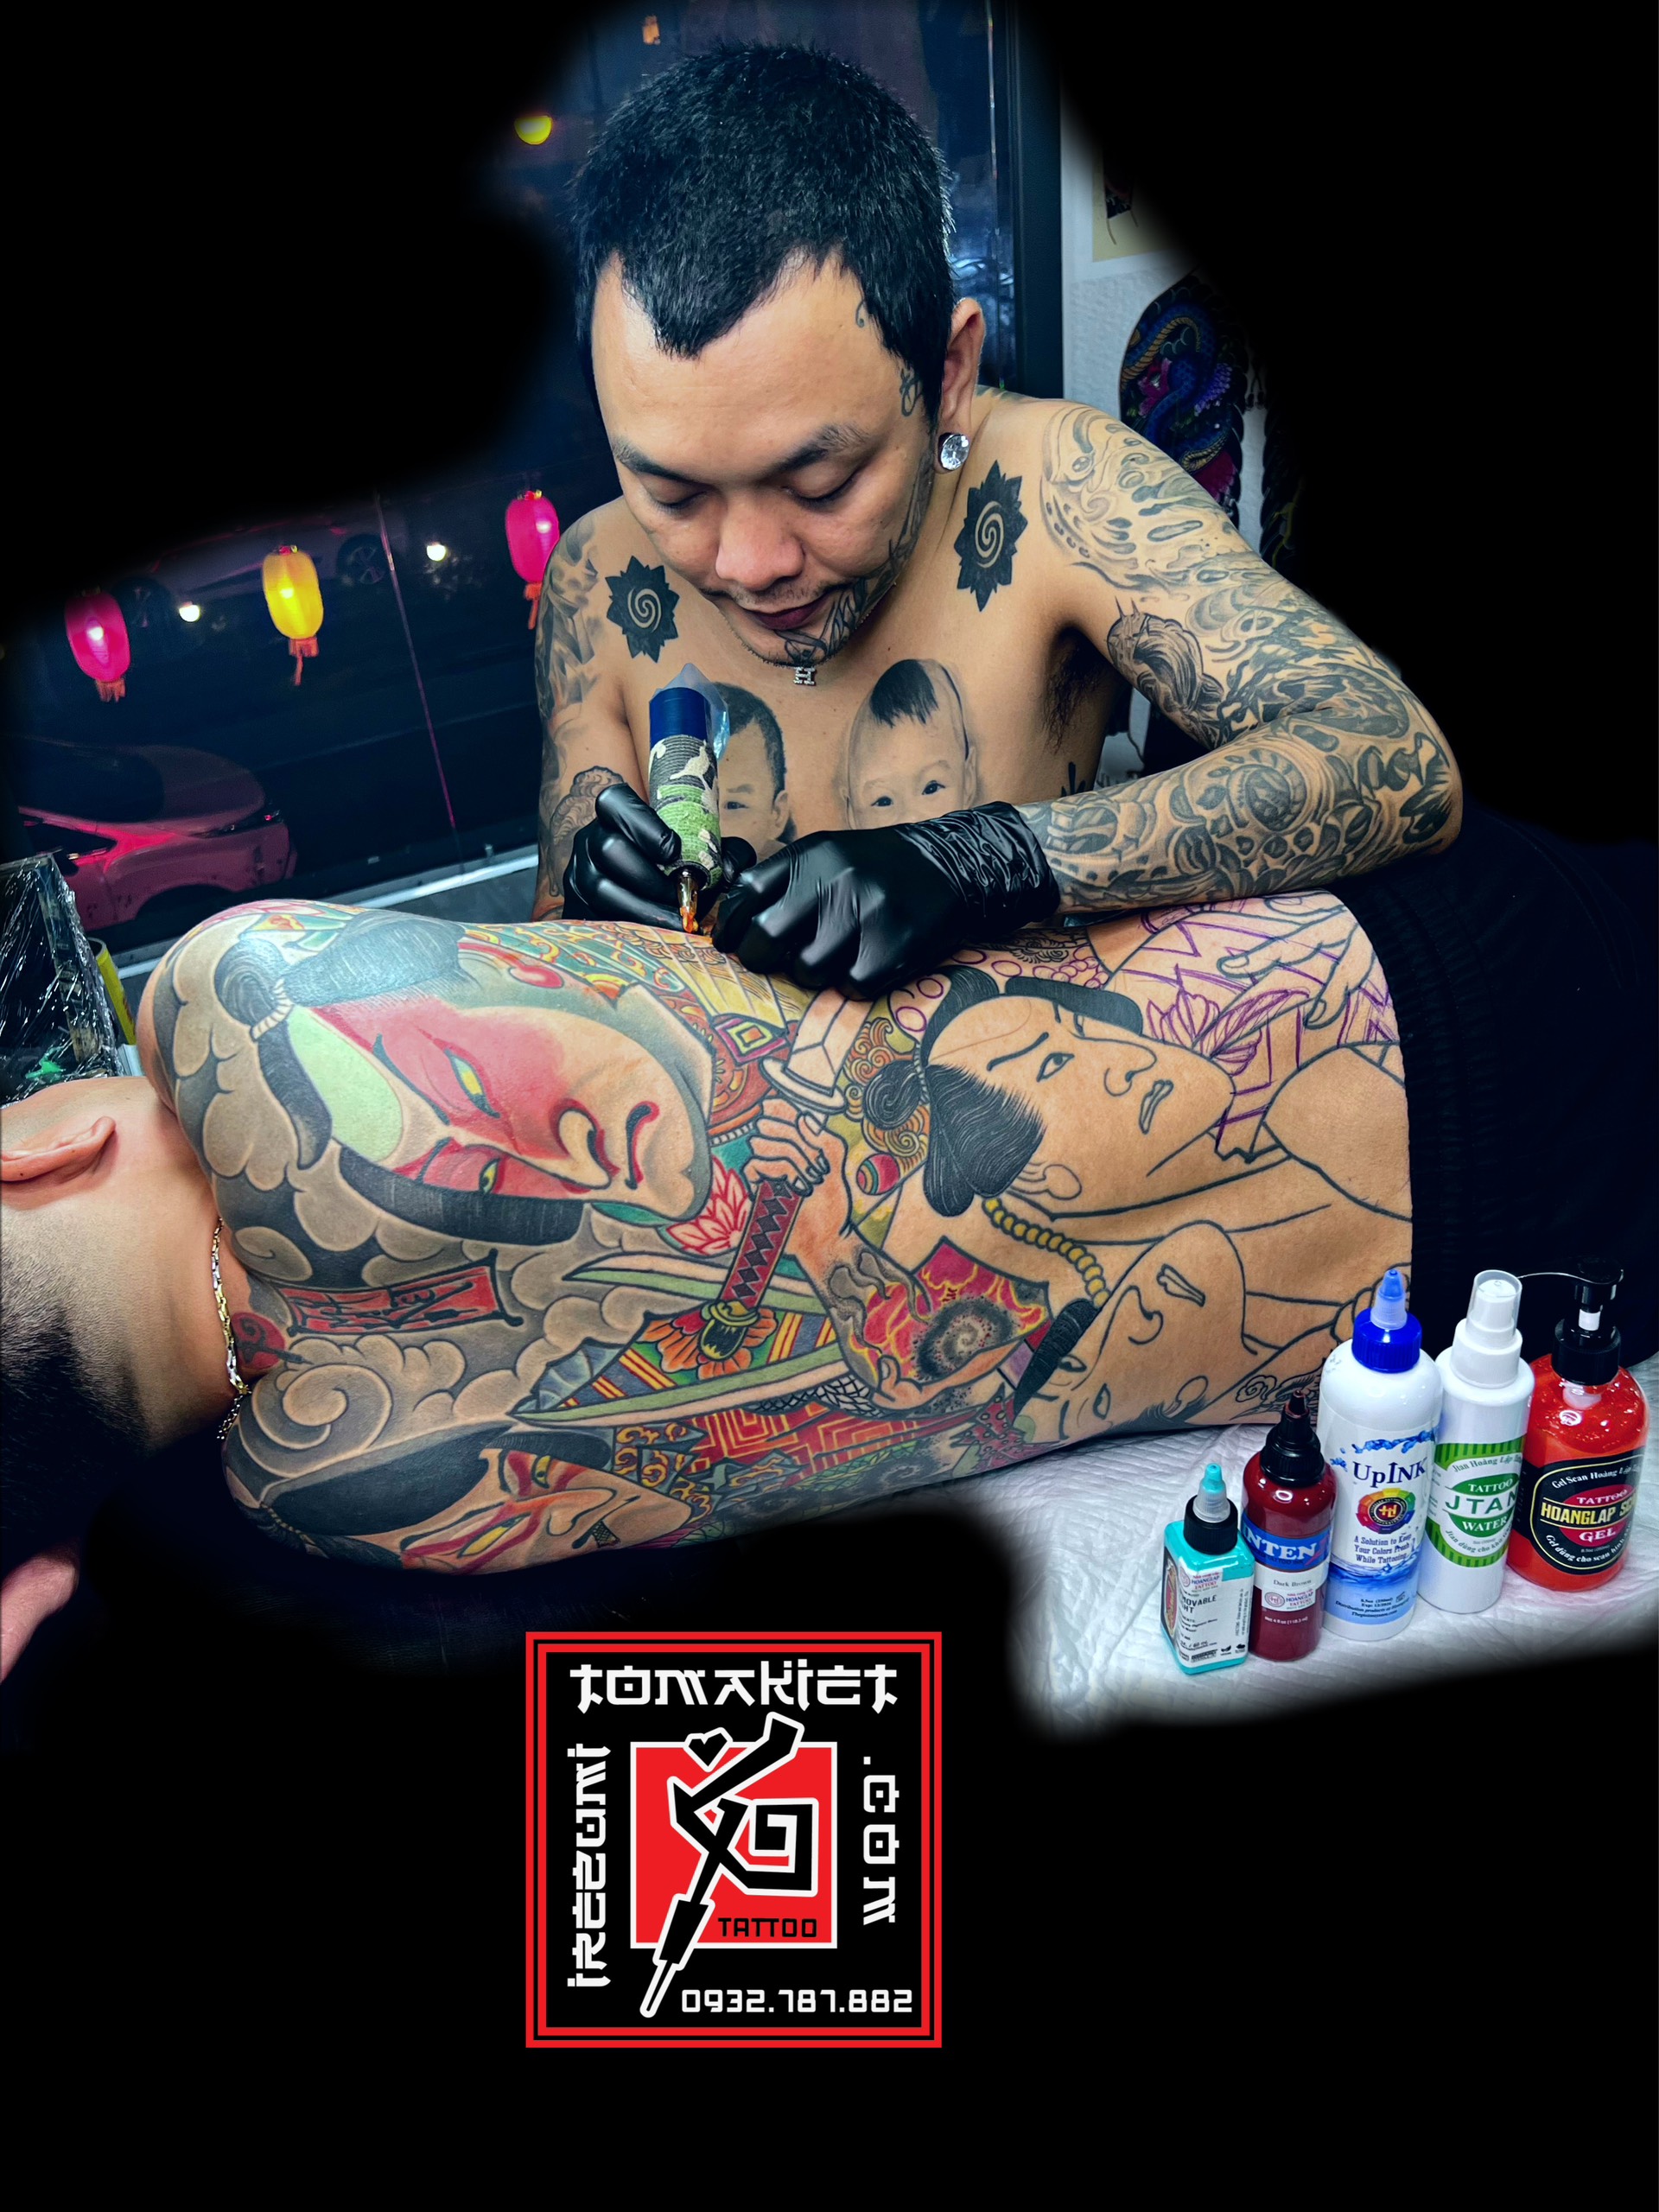 Xăm hình nghệ thuật và nguồn cảm hứng - Tattoo Toma Kiet